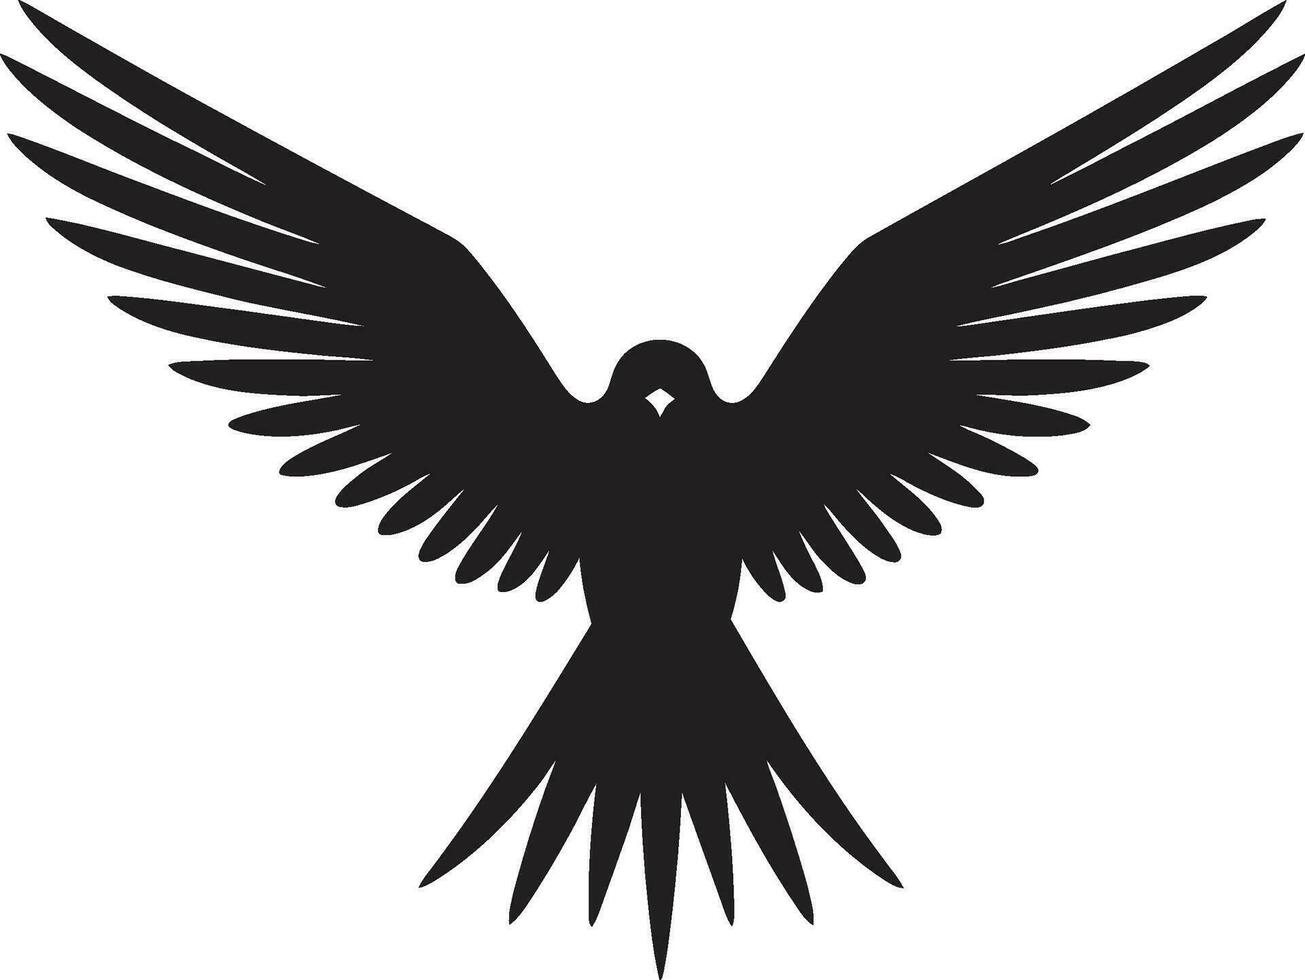 schwarz Schönheit im das Himmel ebon Emblem von Präzision Grafik Raubvogel Symbol Jagd Opulenz vektor